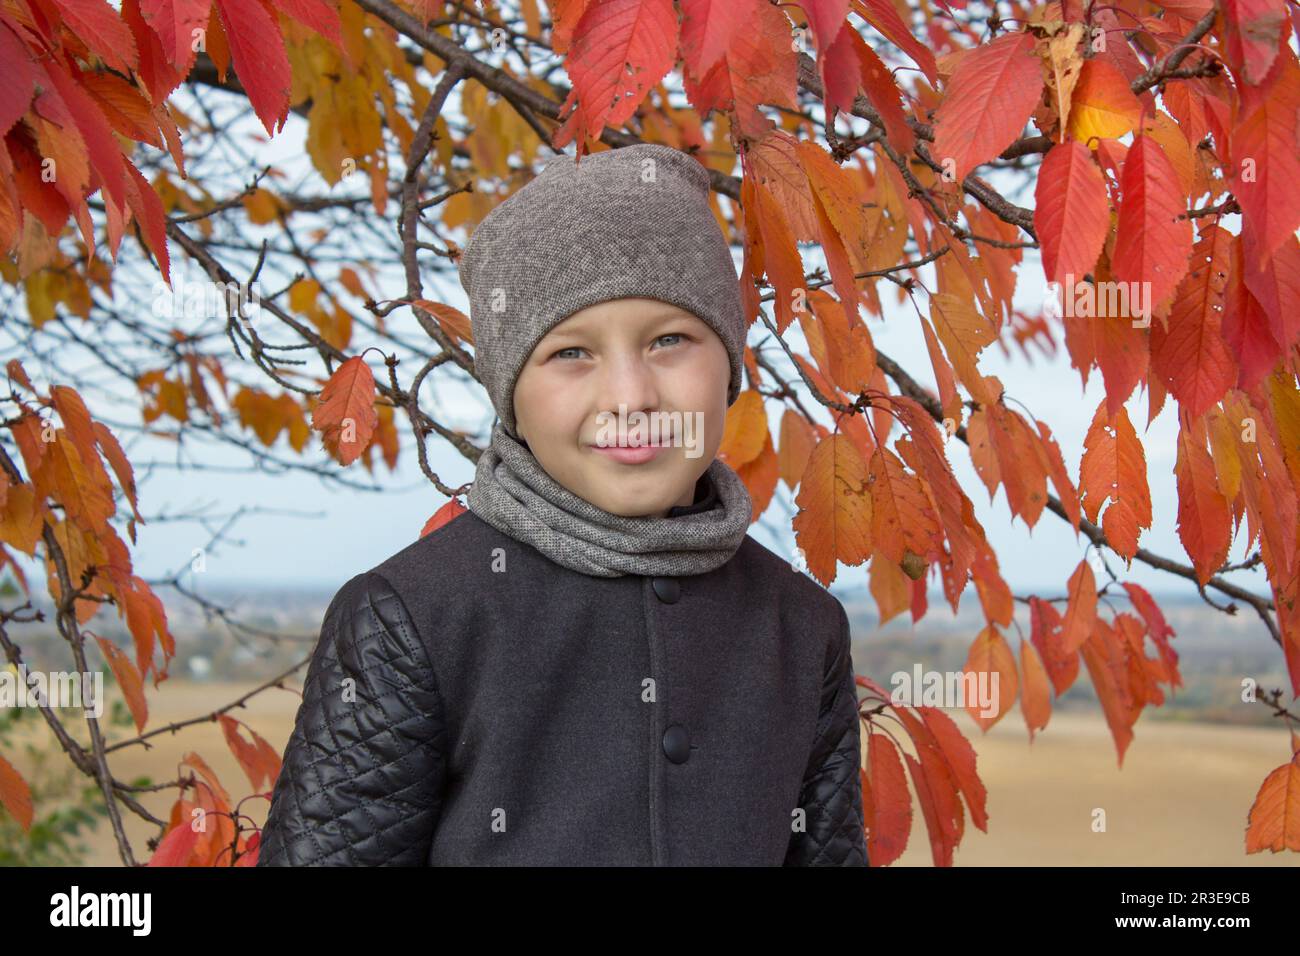 Da war ein Junge unter einem Herbstbaum mit roten Blättern Stockfoto